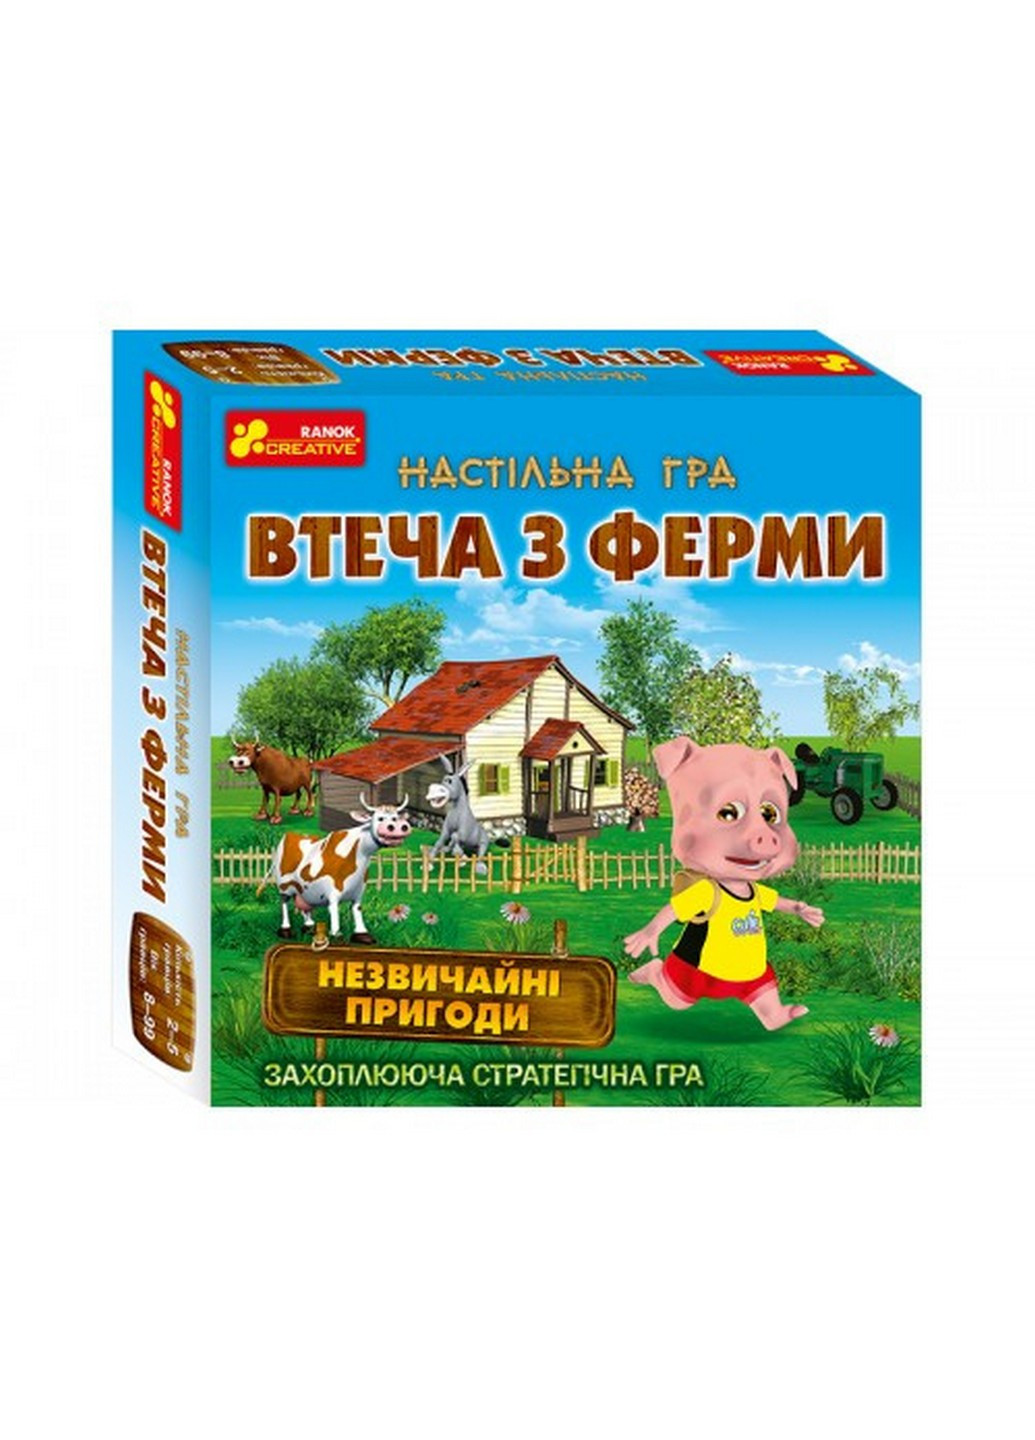 Дитяча настільна гра "Втеча з ферми" на укр. мовою 23,5х23,5х5,2 см Ranok Creative (259244506)